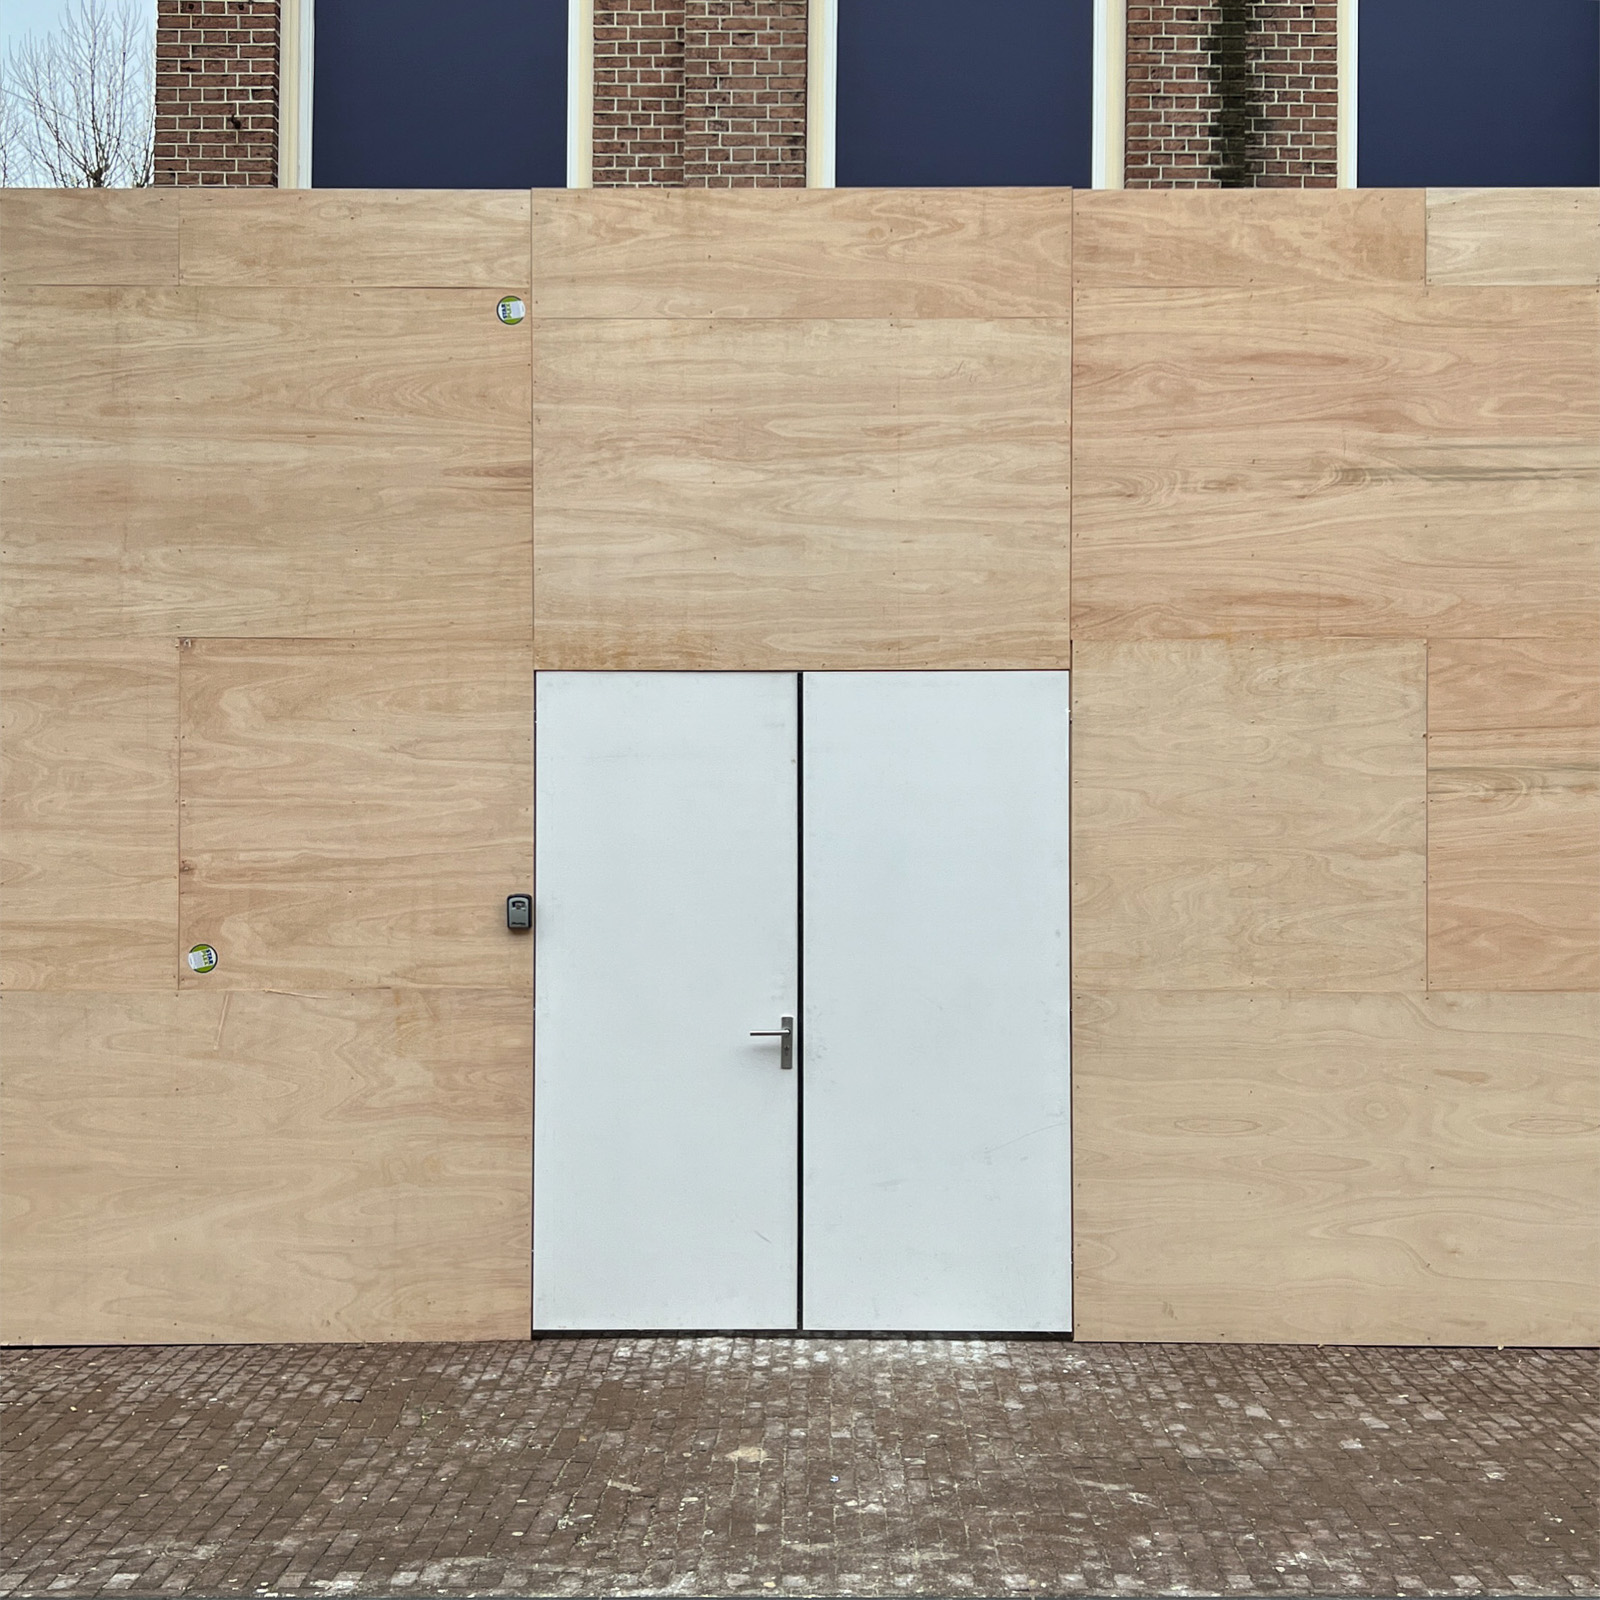 temporary-design-facade-14